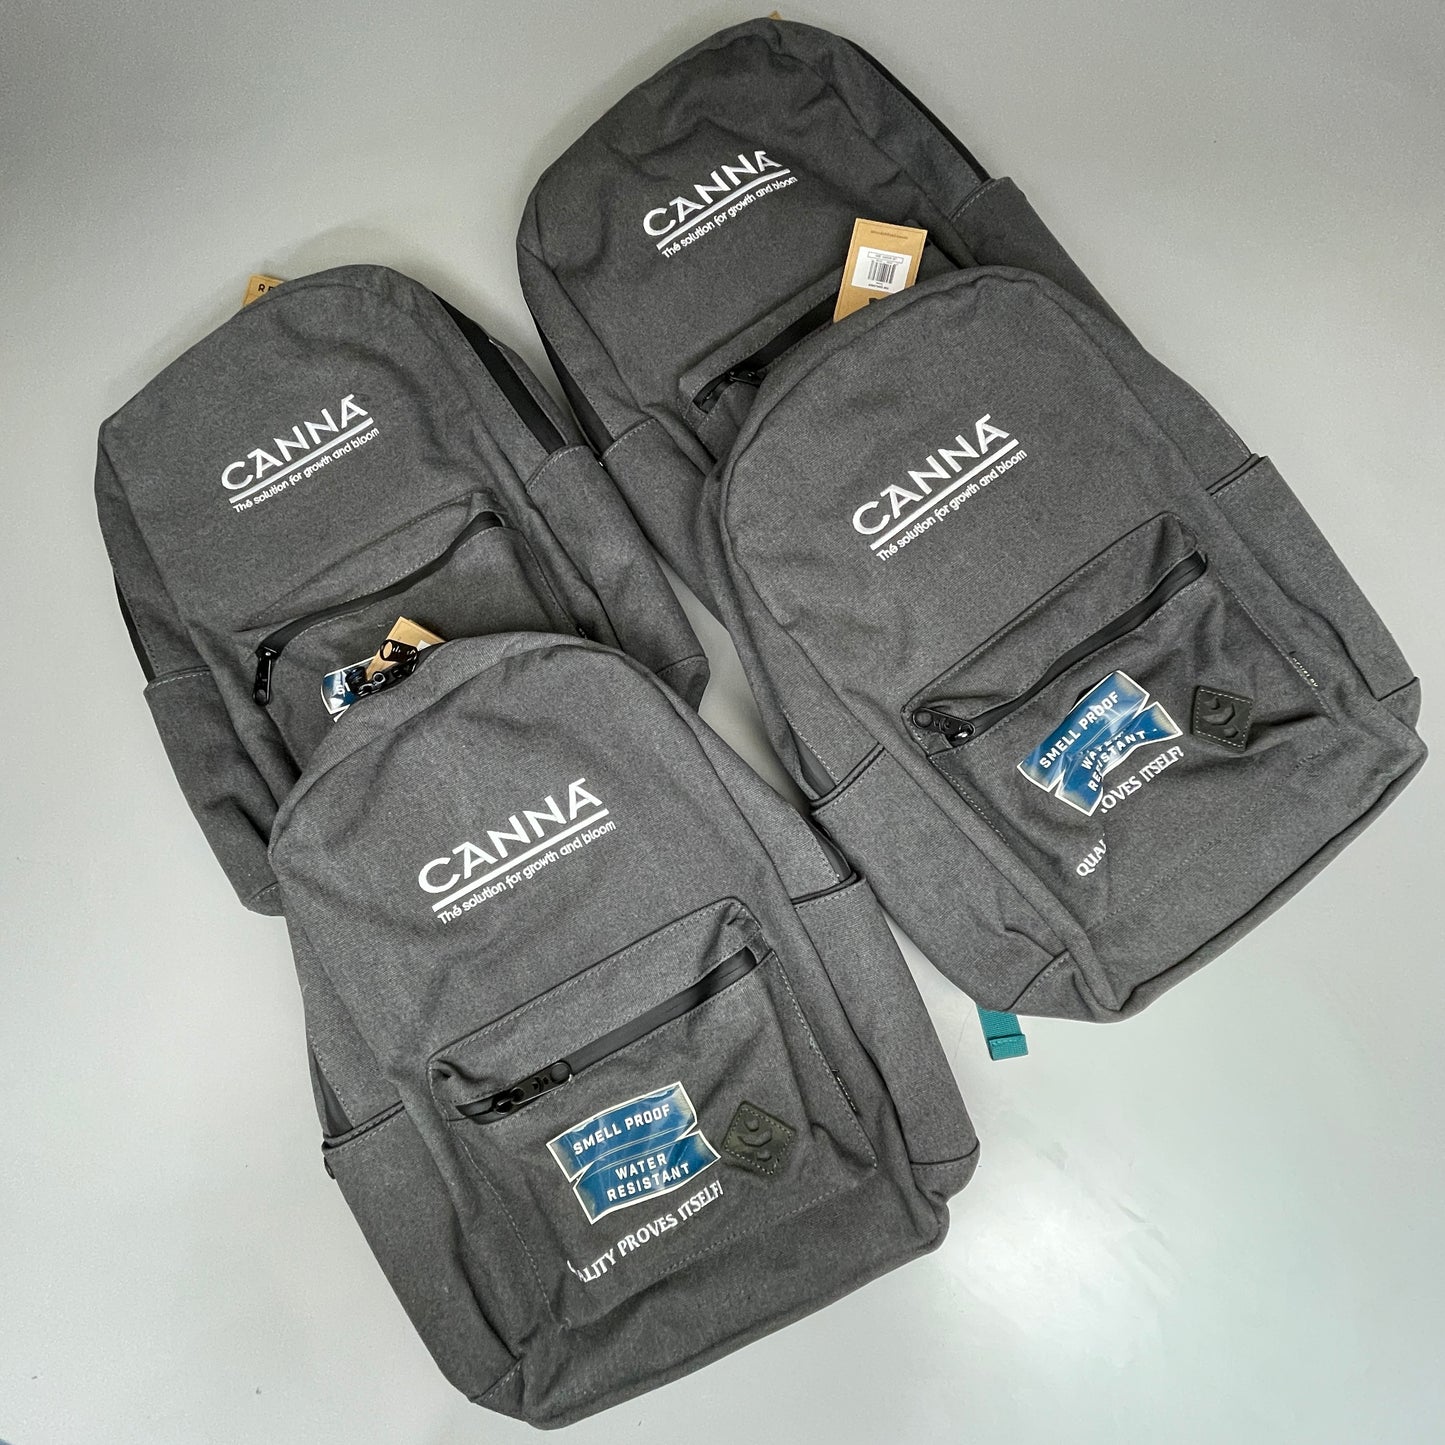 ZA@ REVELRY Backpacks Grey Lot of 4 The Explorer Water Resistant Branded Revelry Backpacks (New)